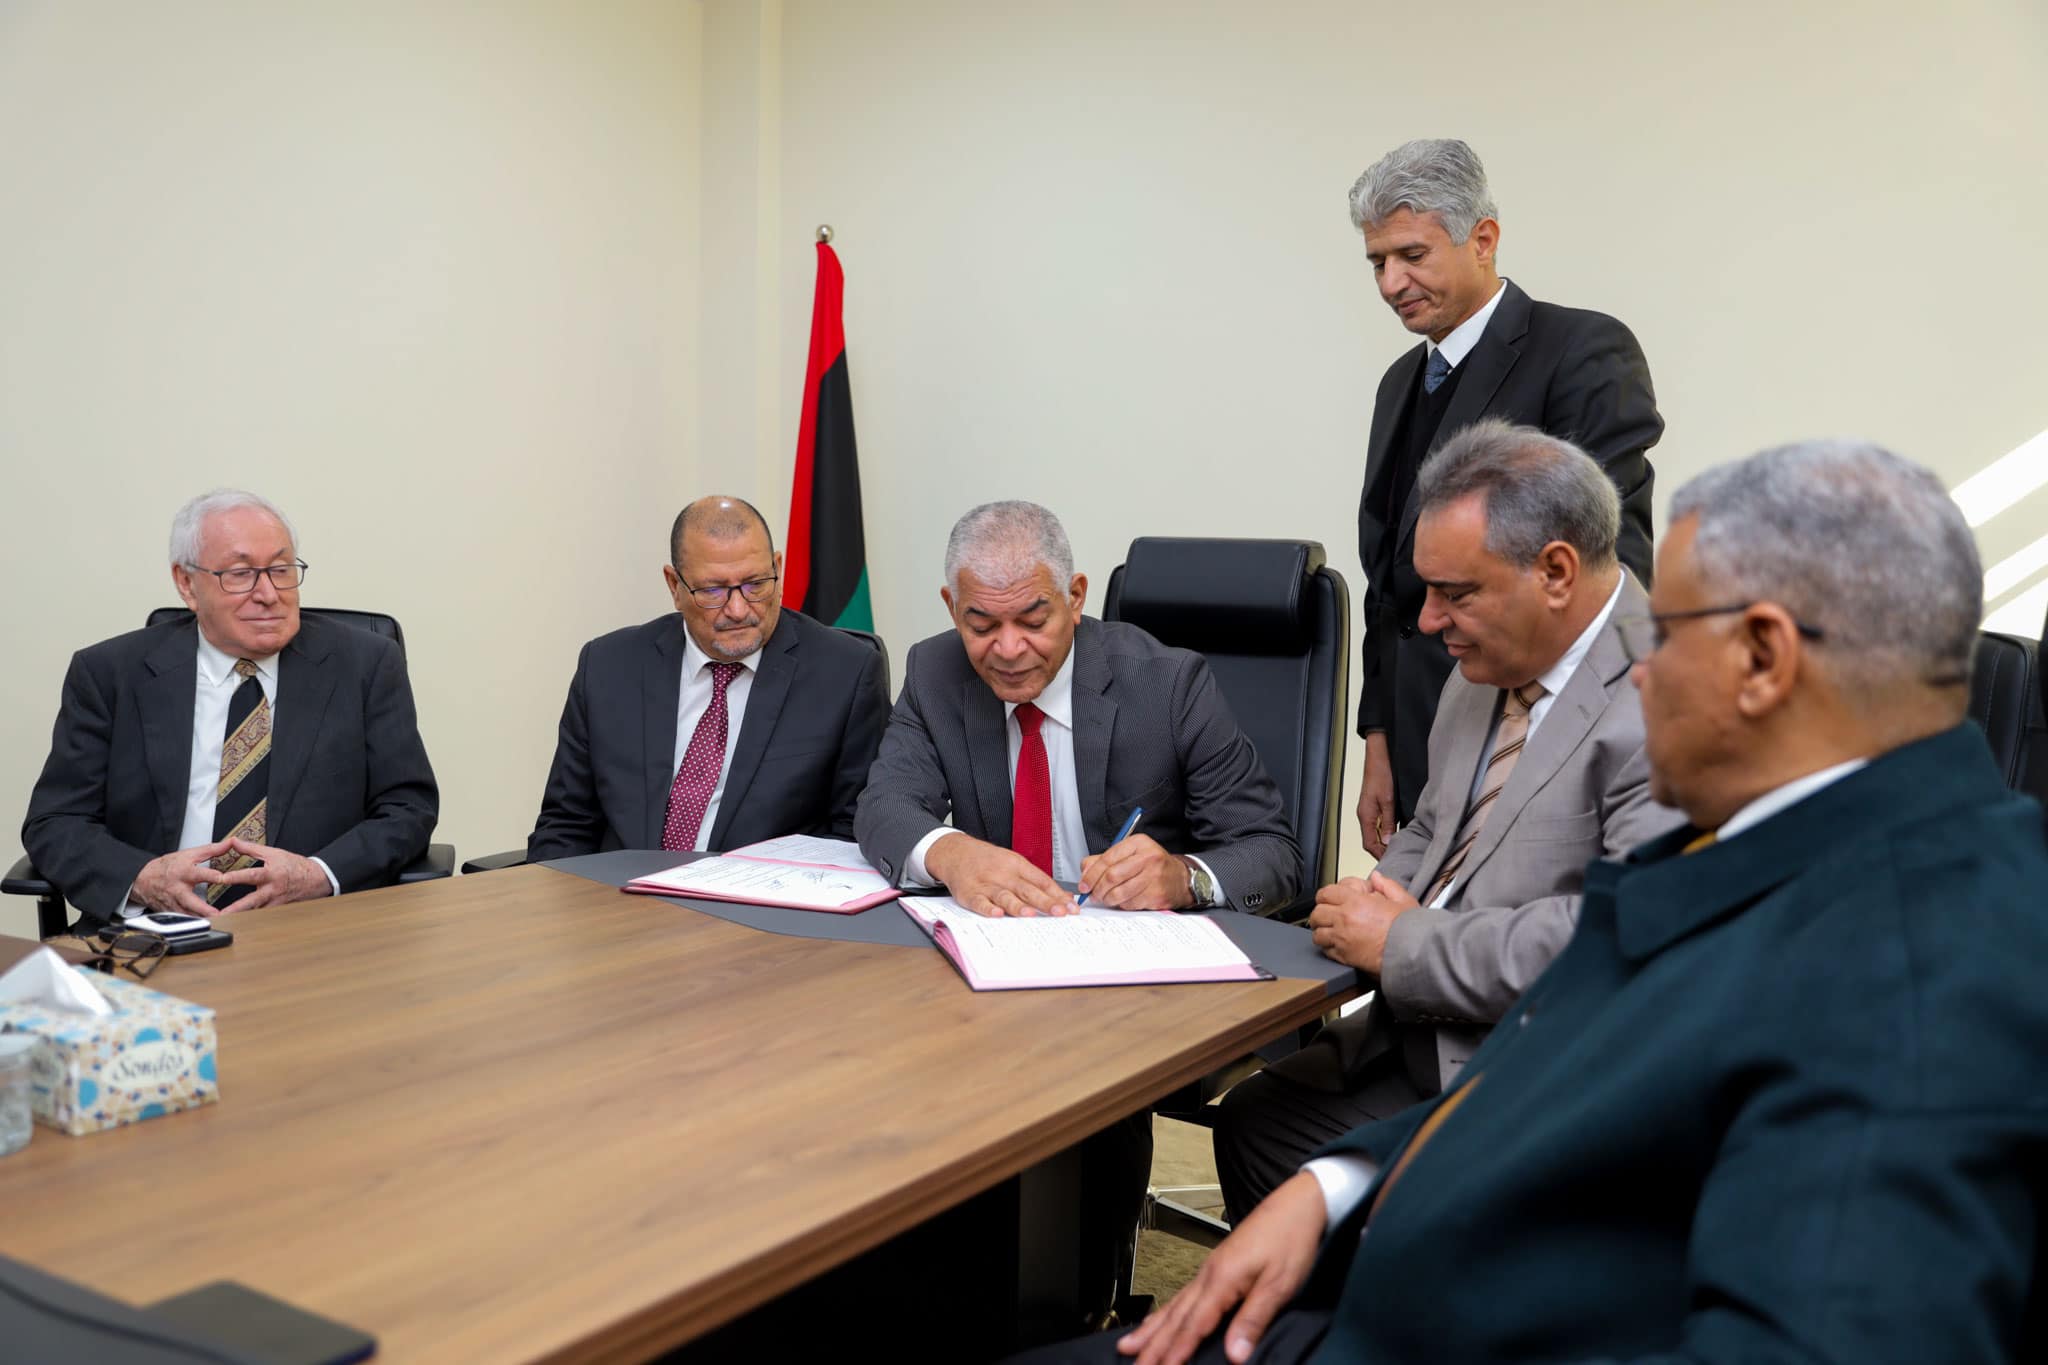 توقيع اتفاقية لتنفيذ مشروع سكك حديدية تمتد من بلدية بنغازي الي بلدية مساعد الحدودية